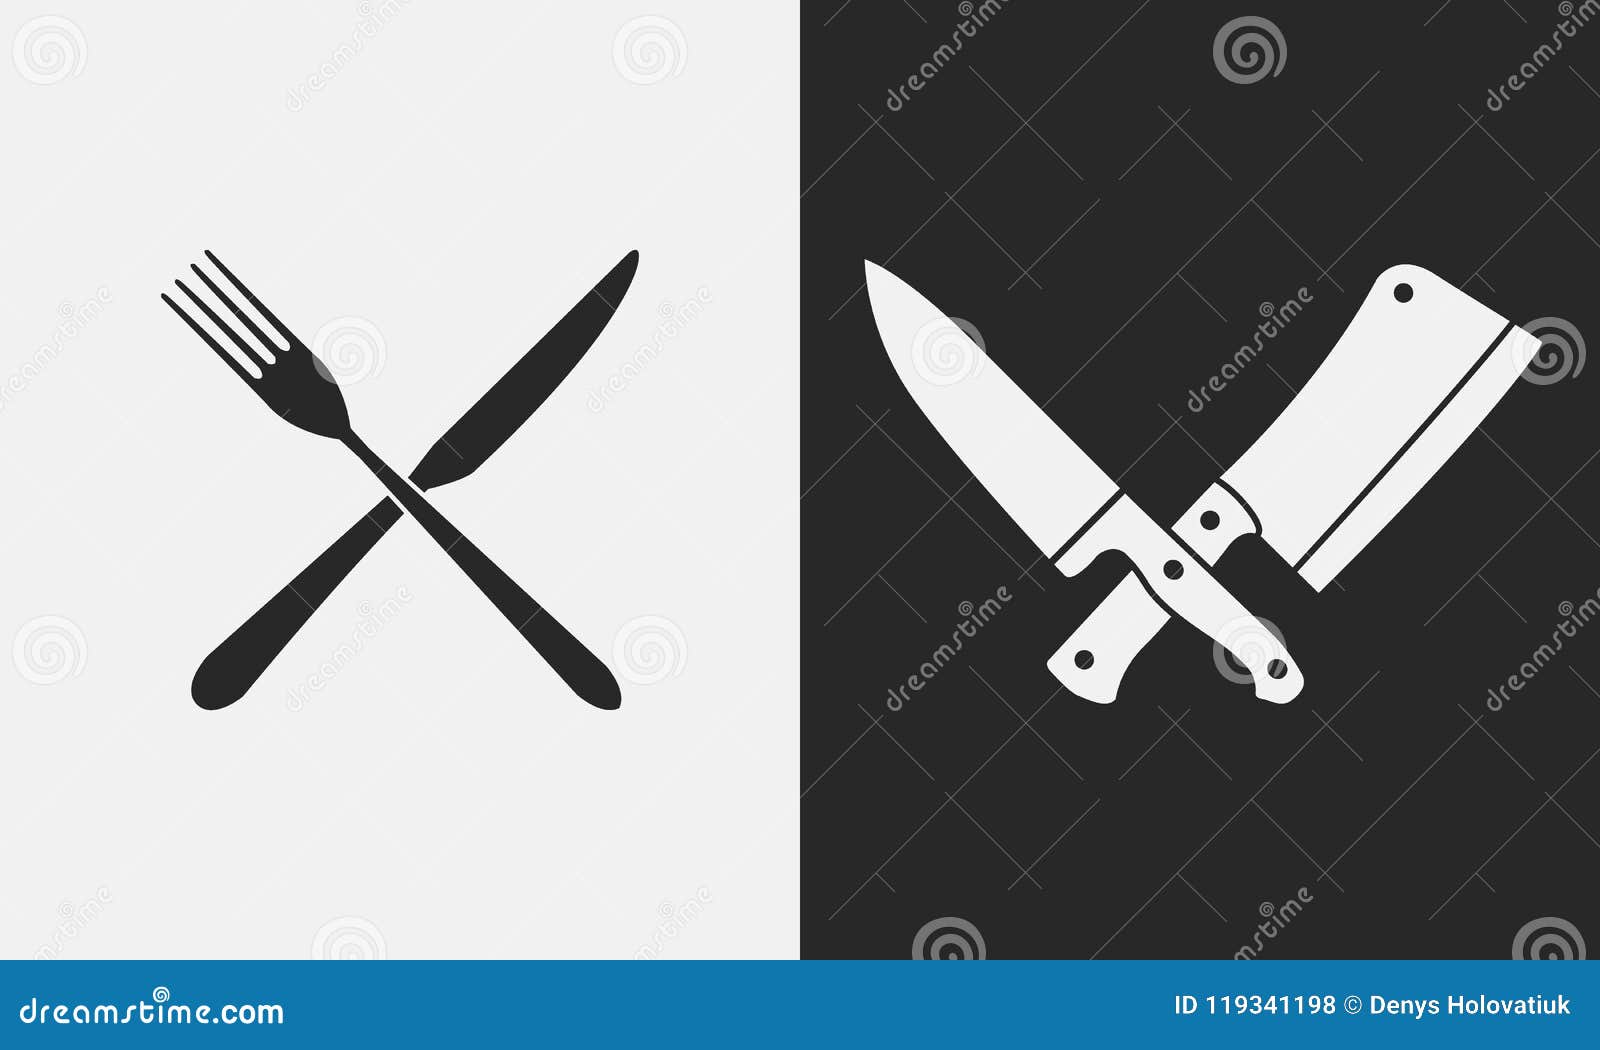 Los cuchillos restaurante